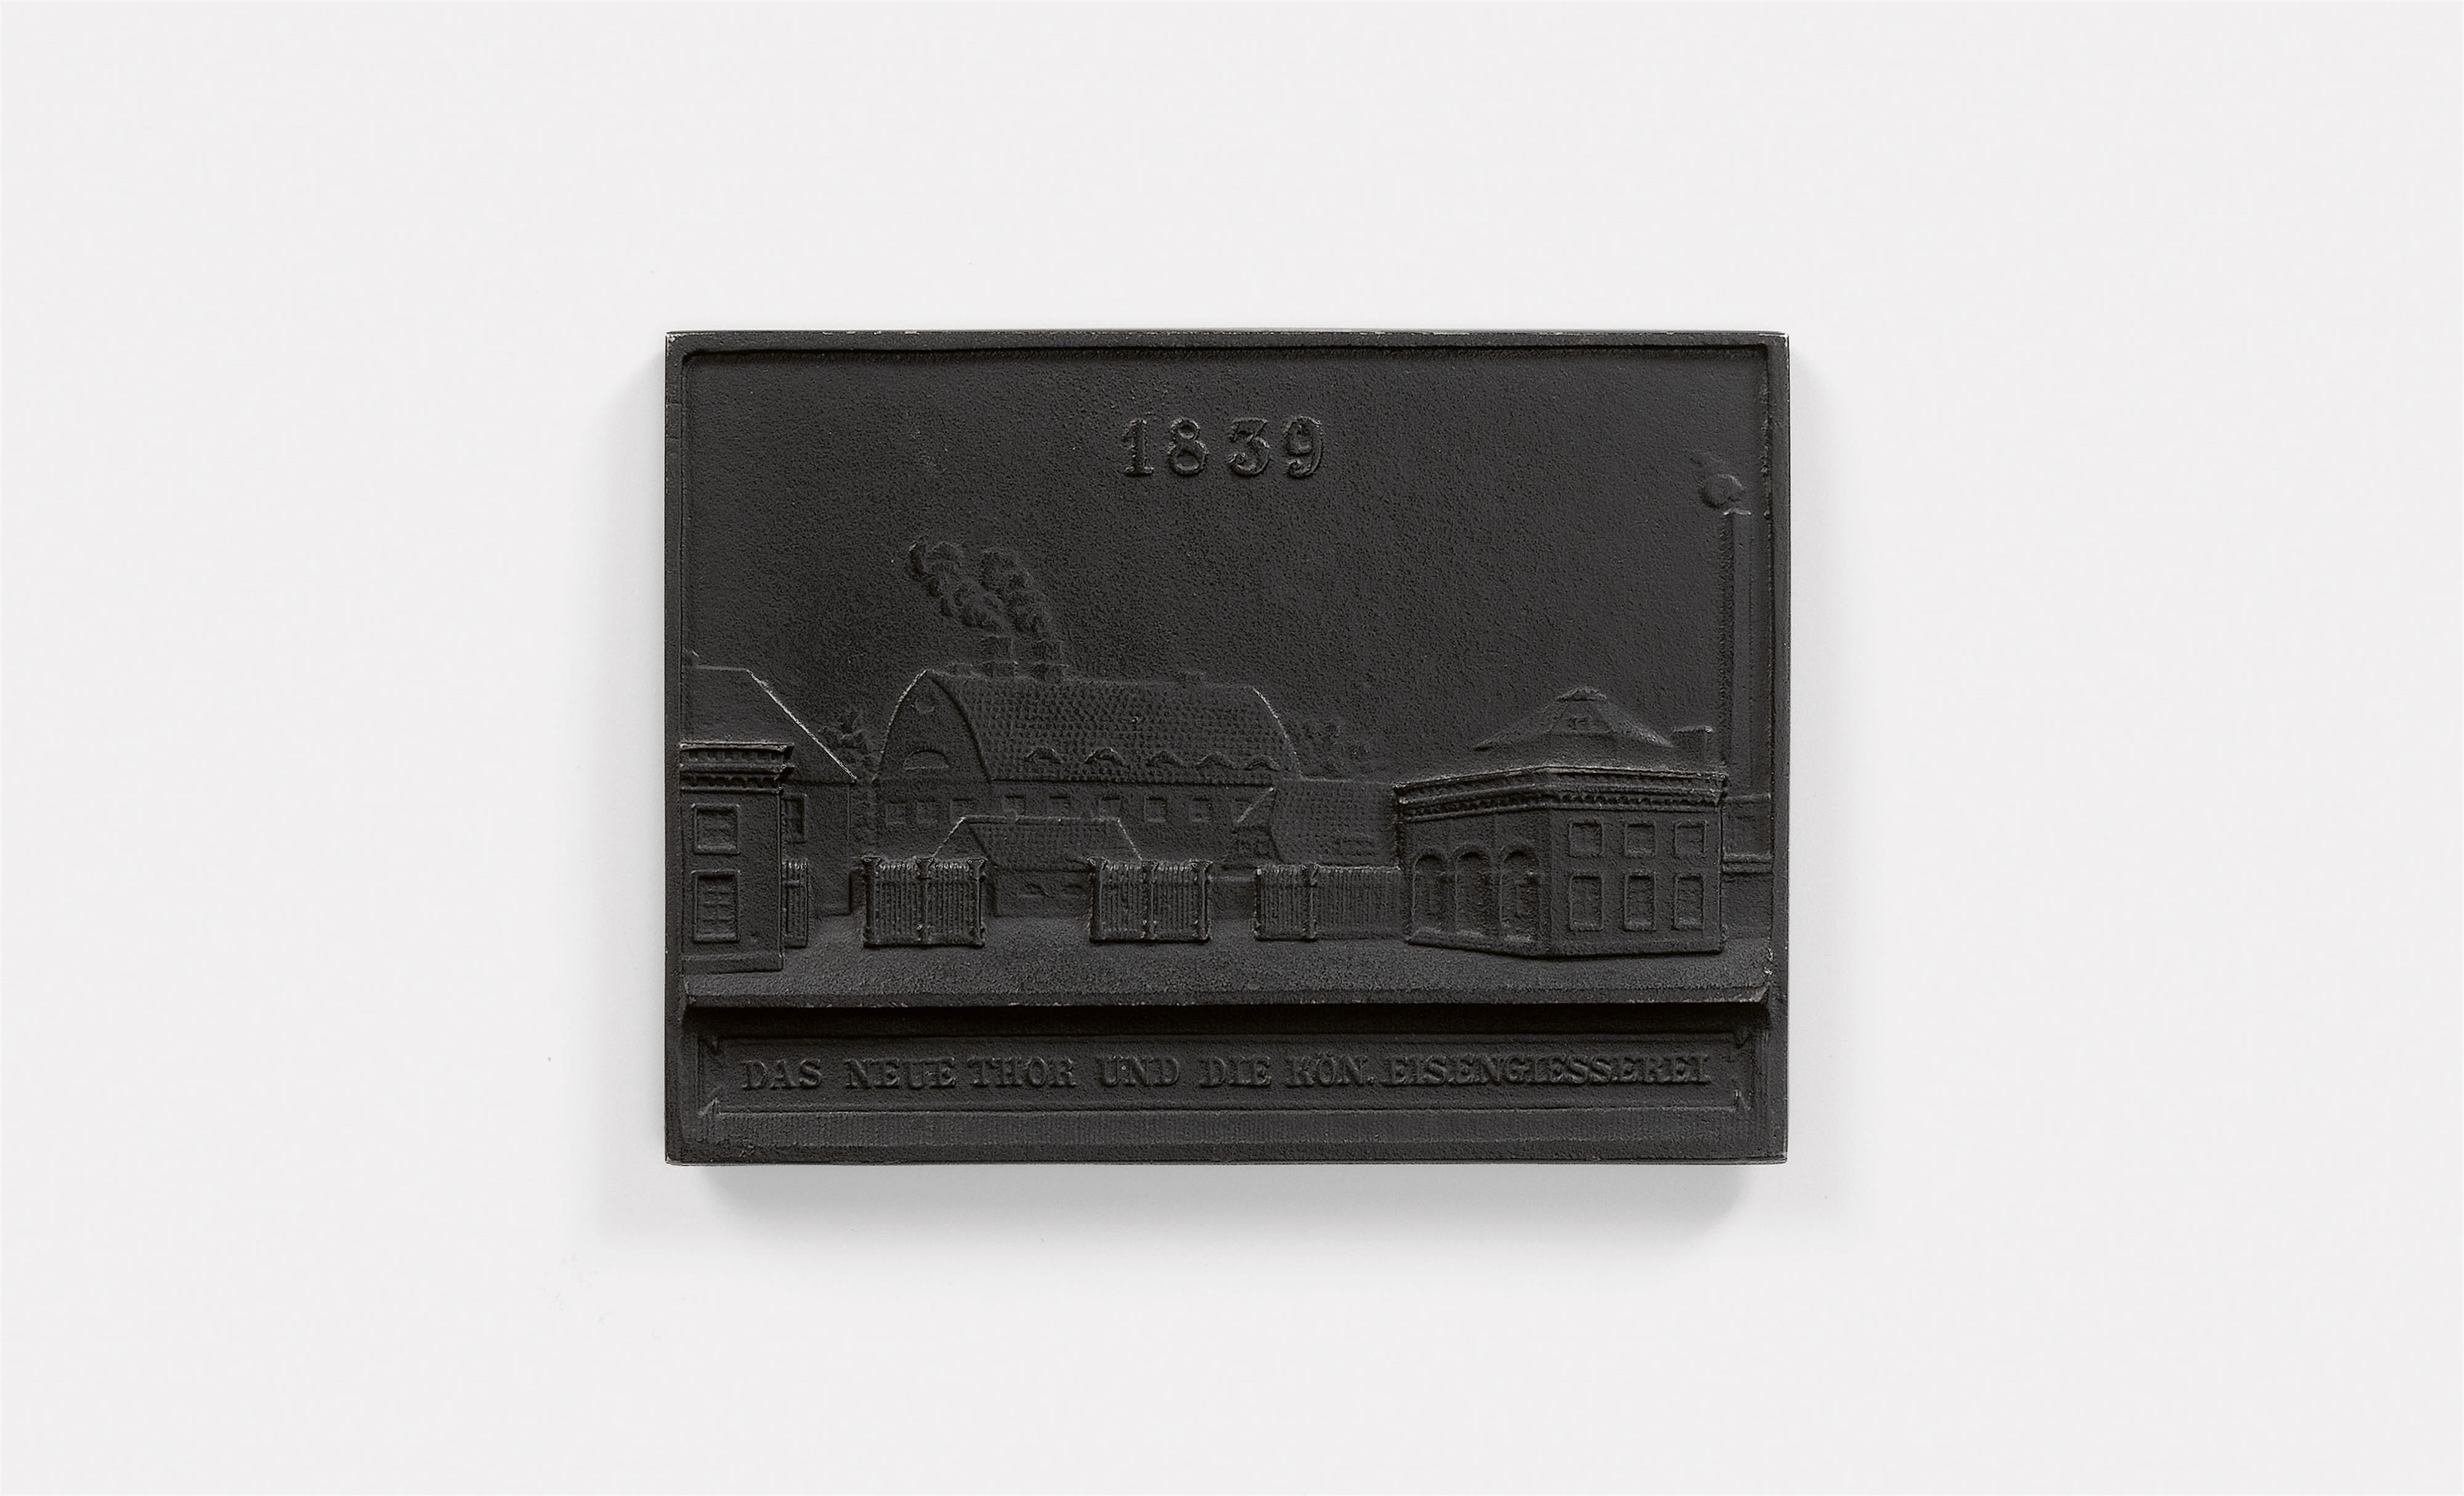 A double-sided cast iron New Year's plaque inscribed "1839 DAS NEUE THOR UND DIE KÖN. EISENGIESSEREI" - image-2